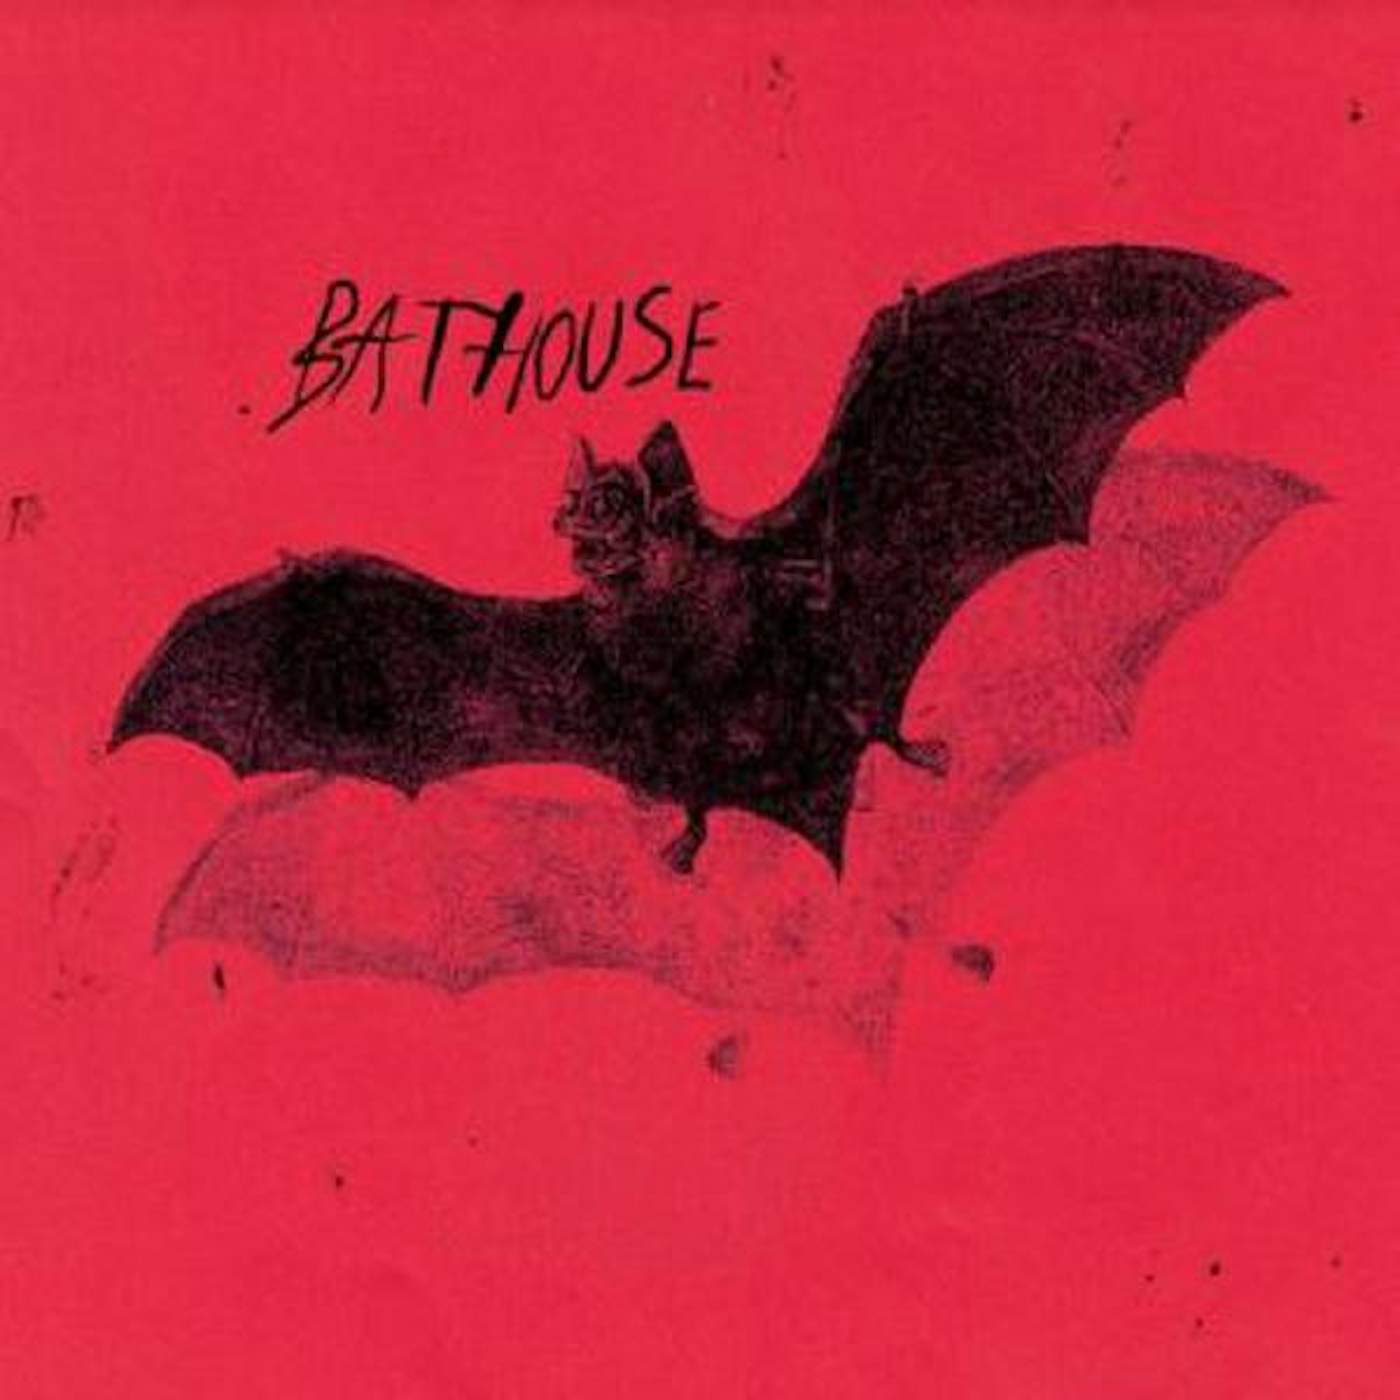 BATHOUSE Vinyl Record